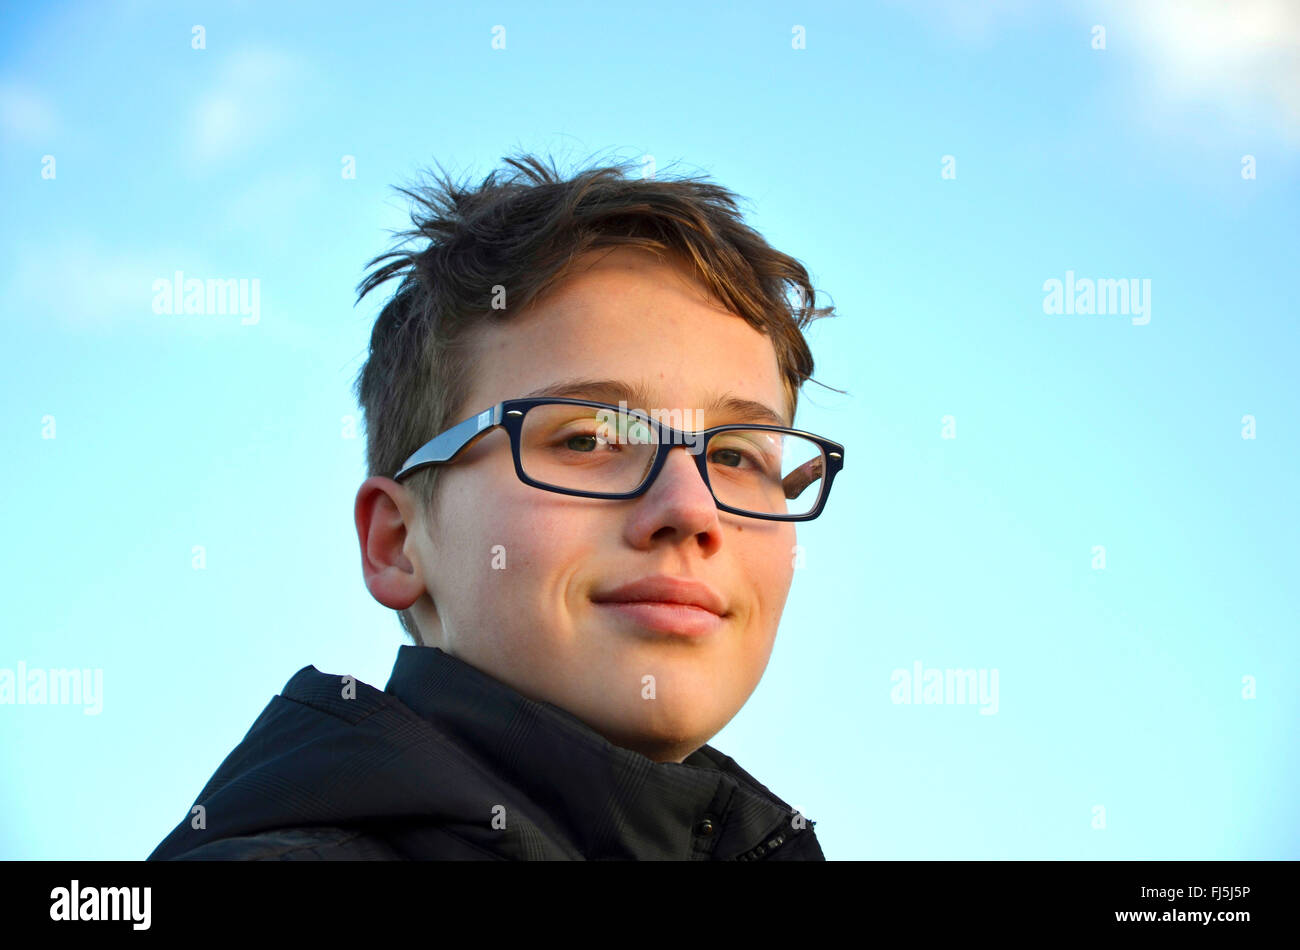 Smiling boy avec des lunettes, portrait d'un enfant Banque D'Images